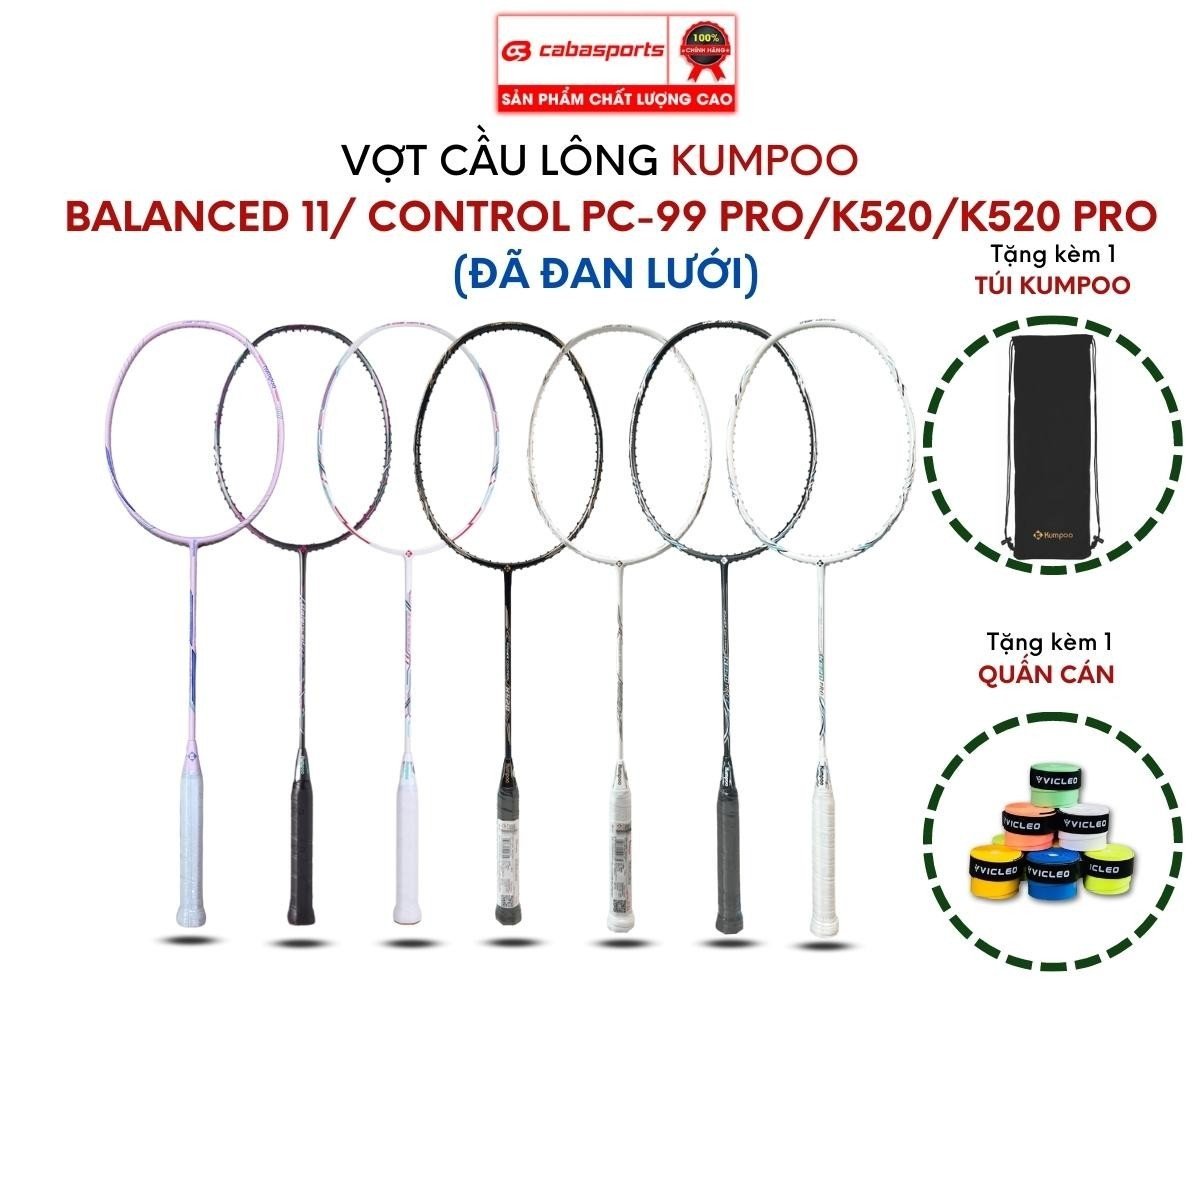 Vợt cầu lông đơn đã đan lưới Kumpoo Power Control K520 Pro, K520S, PC 99 Pro cao cấp siêu nhẹ, vợt công thủ toàn diện giá rẻ Bảo hành 2 tháng